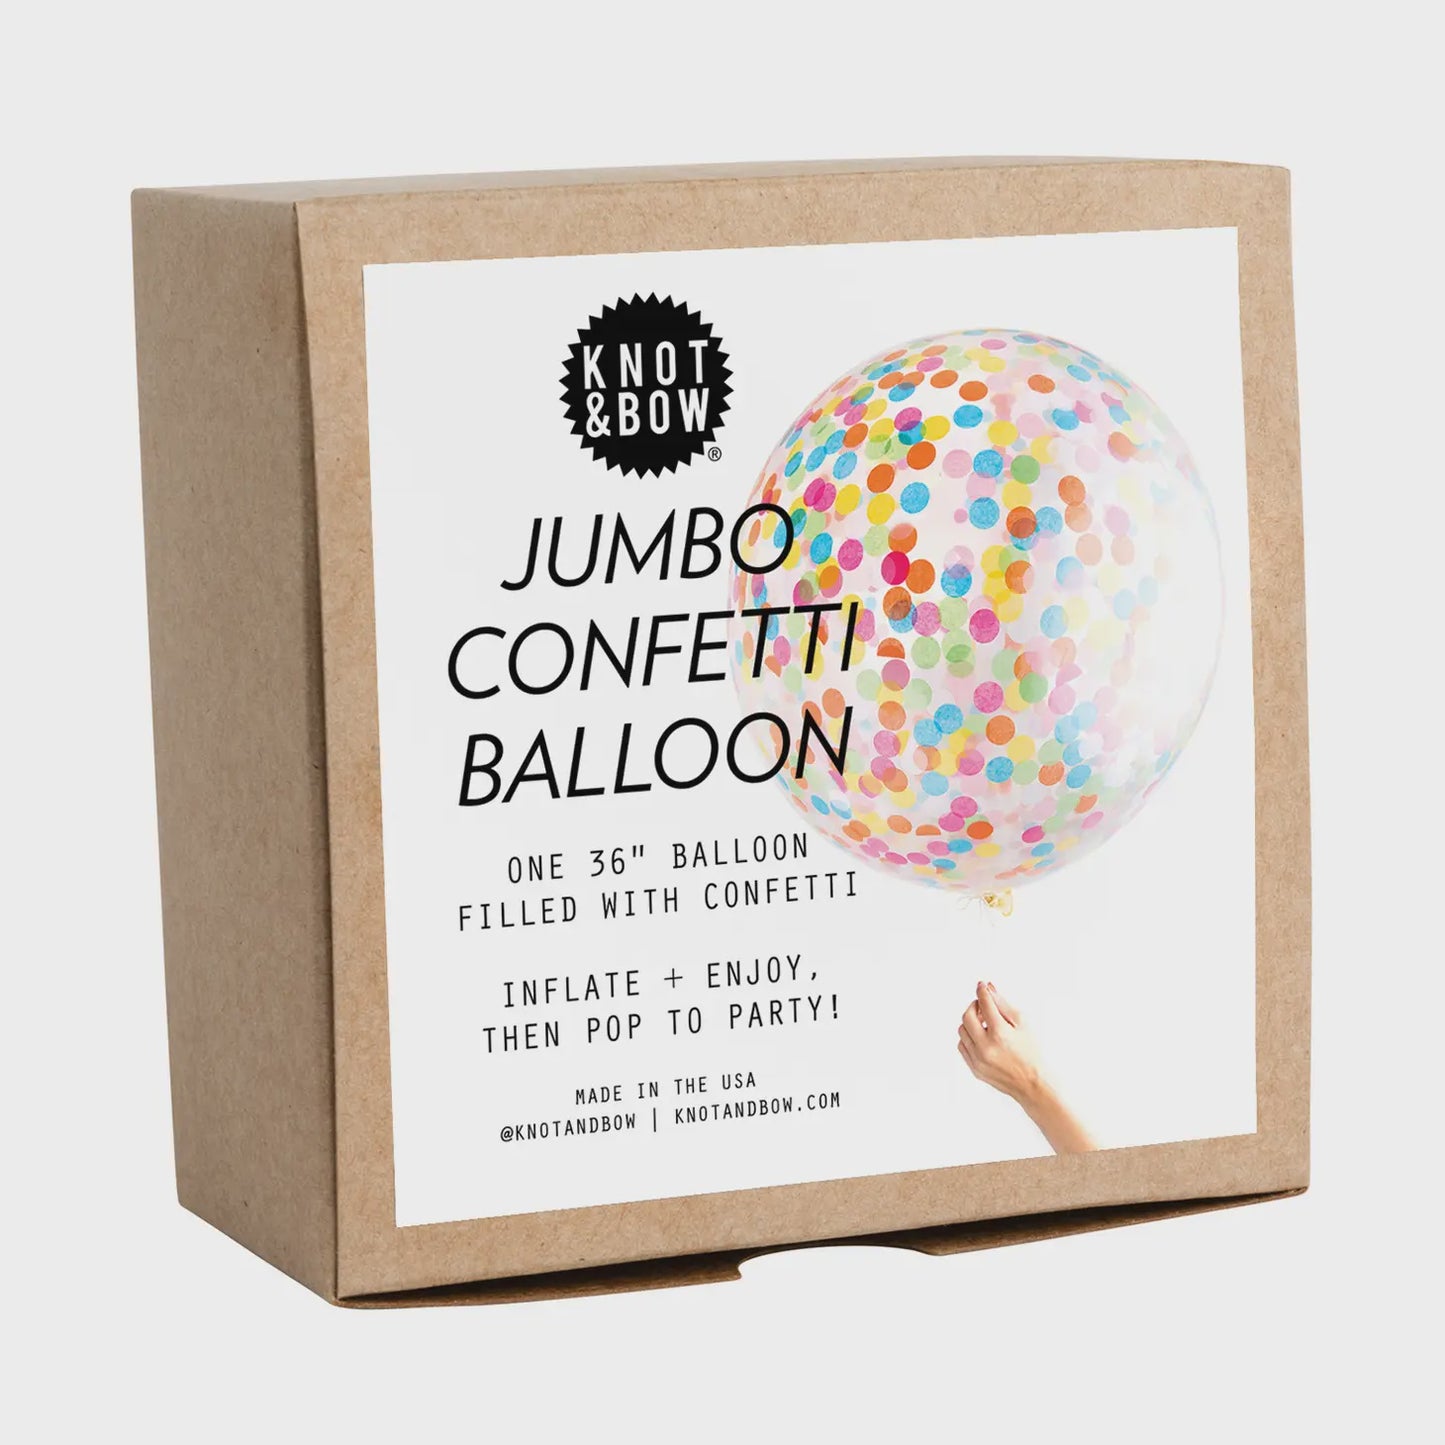 Assorted Jumbo Confetti Balloon